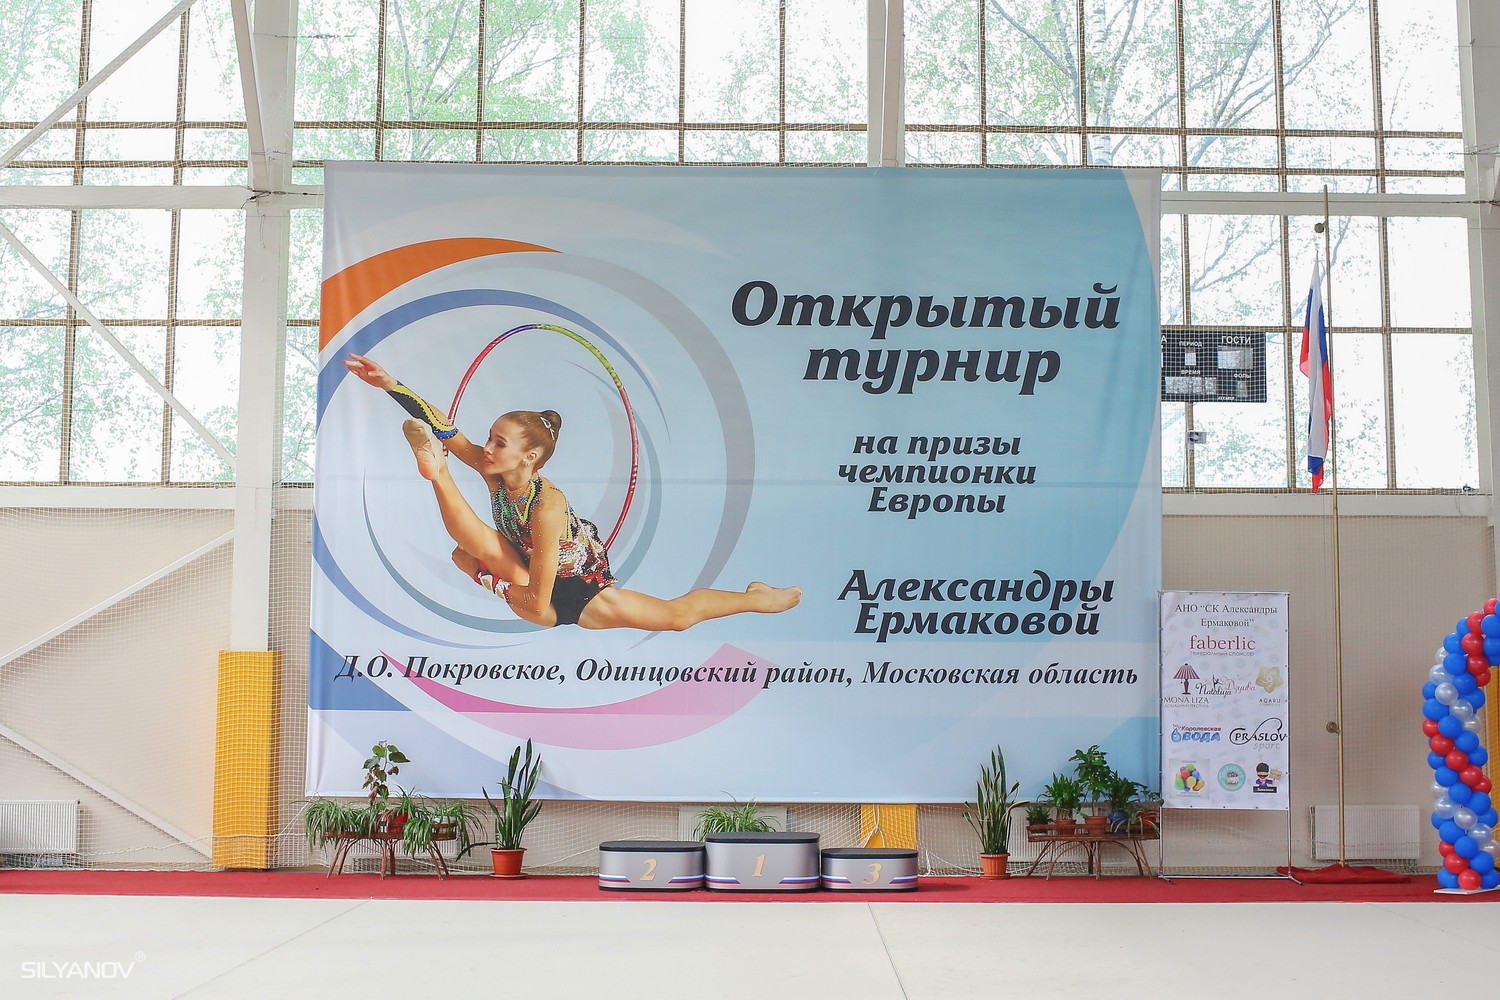 Открытый турнир на призы Александры Ермаковой (19-21 мая 2017 Покровское)